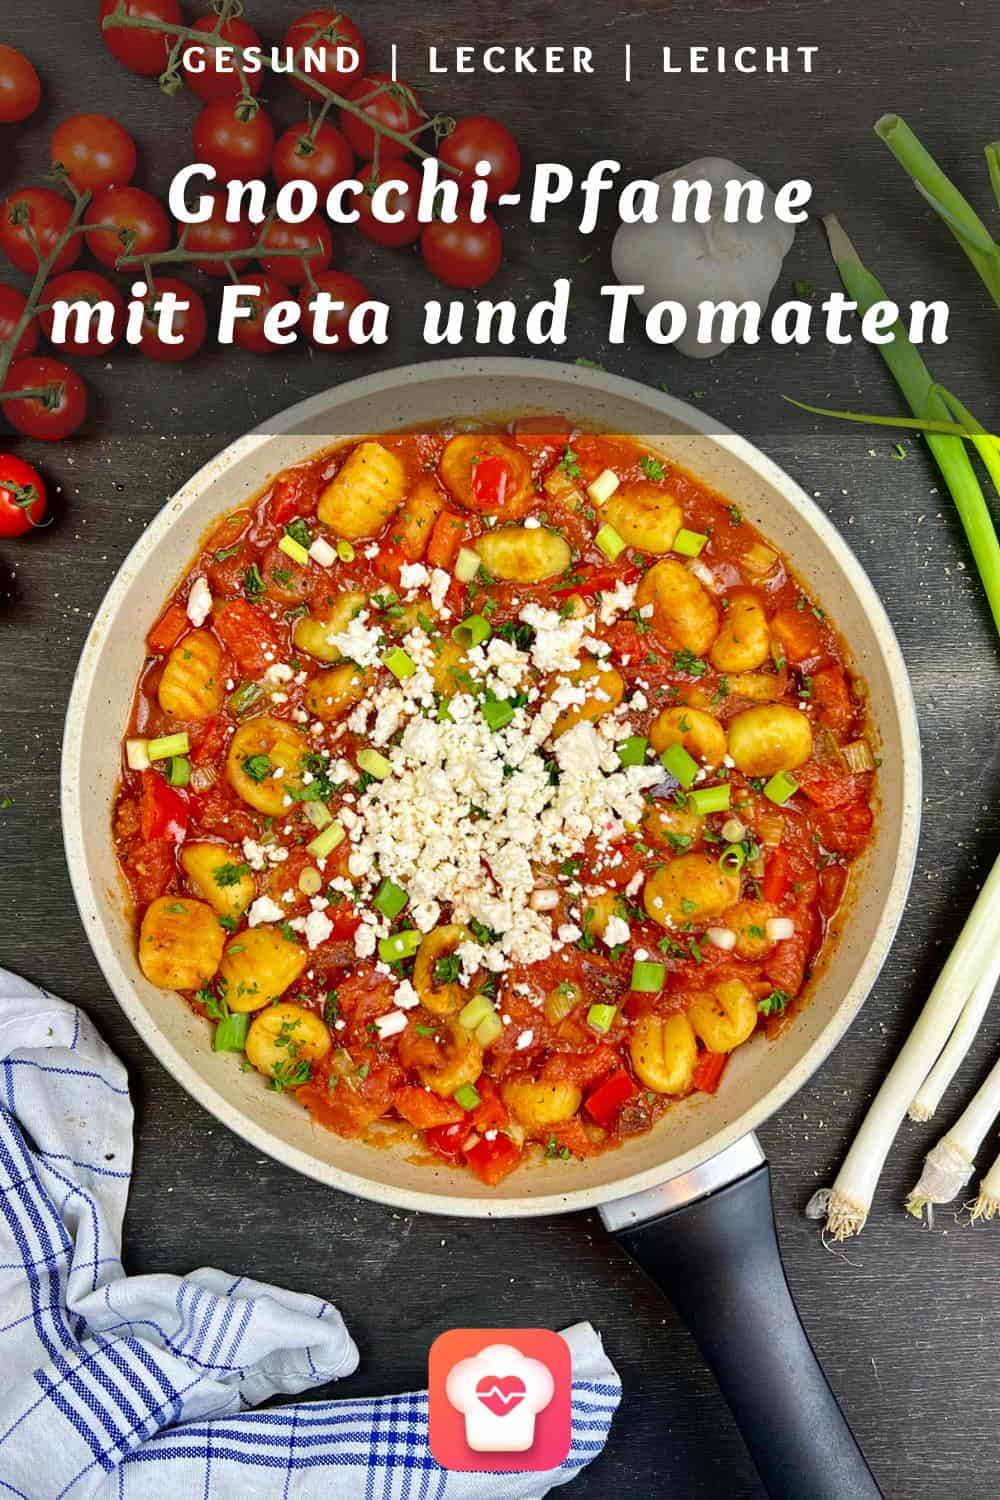 Gnocchi mit Feta und Tomaten - Gnocchi-Pfanne mit Feta